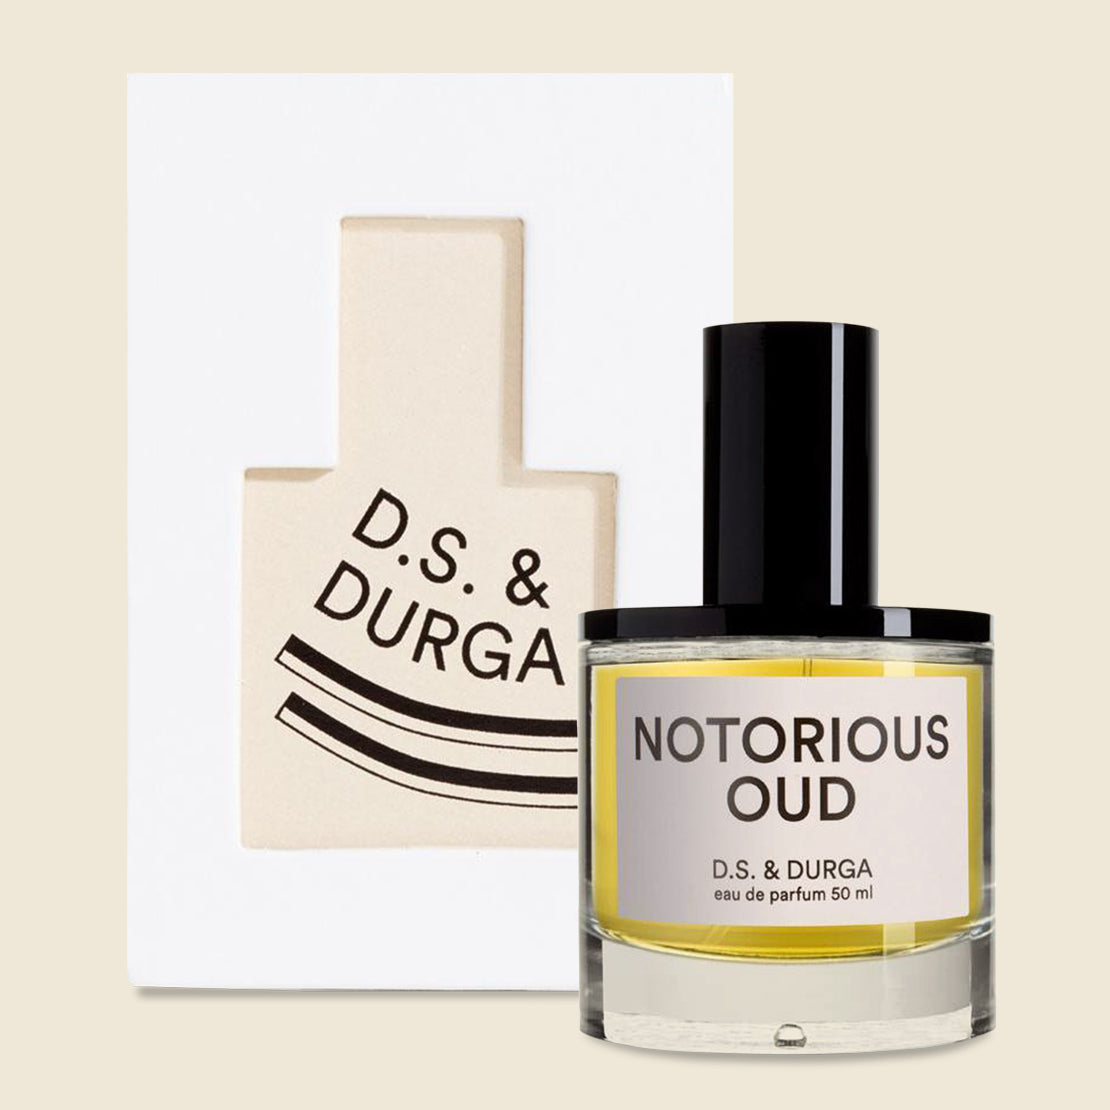 D.S. & Durga Notorious OUD Eau de Parfum